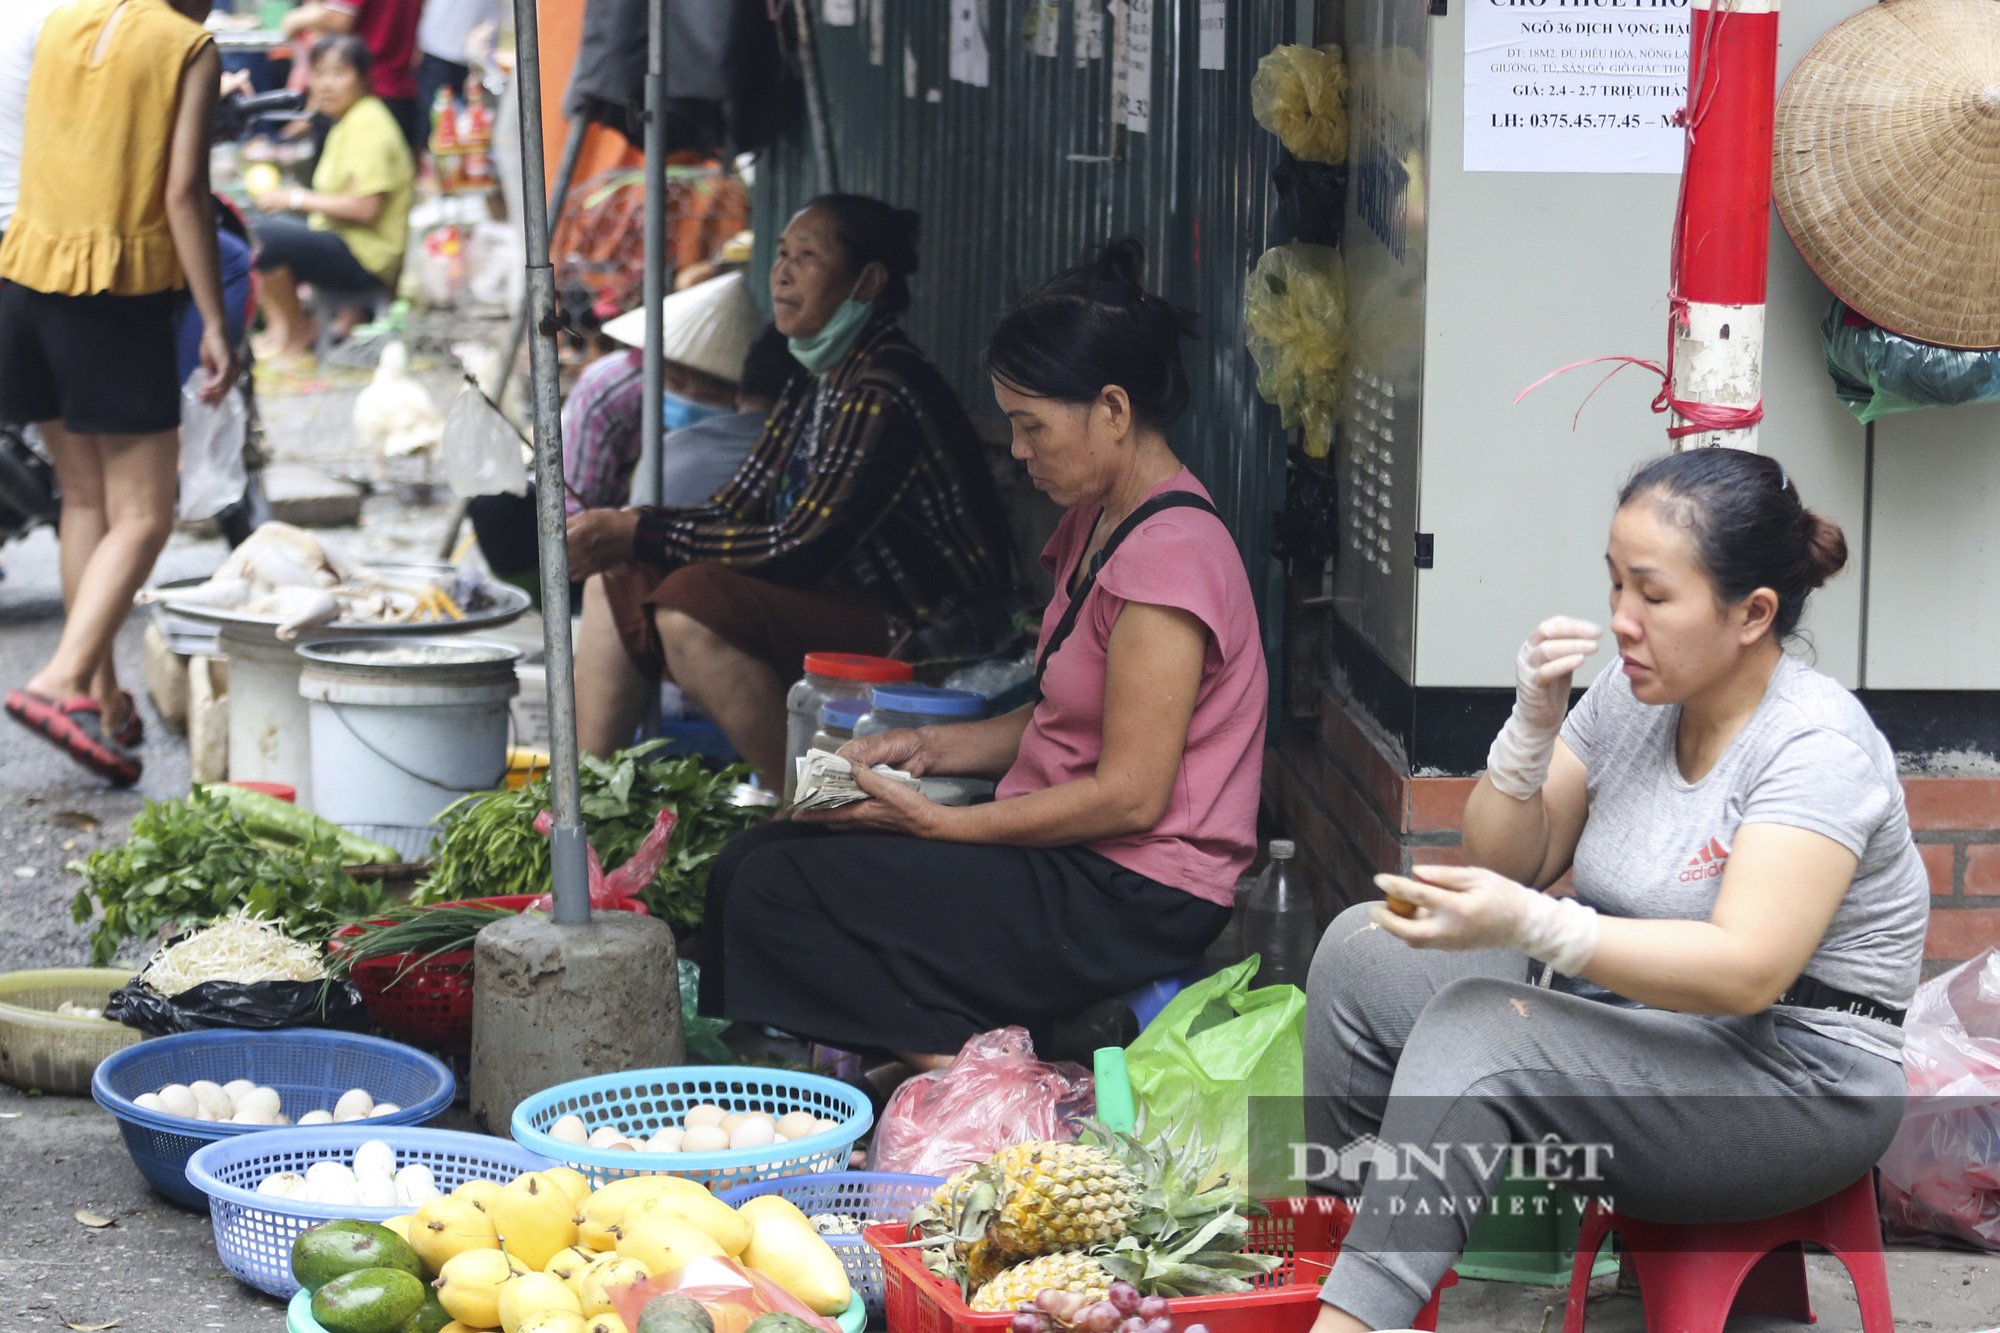 Hà Nội: Nhiều người dân vẫn không đeo khẩu trang tại nơi công cộng - Ảnh 8.